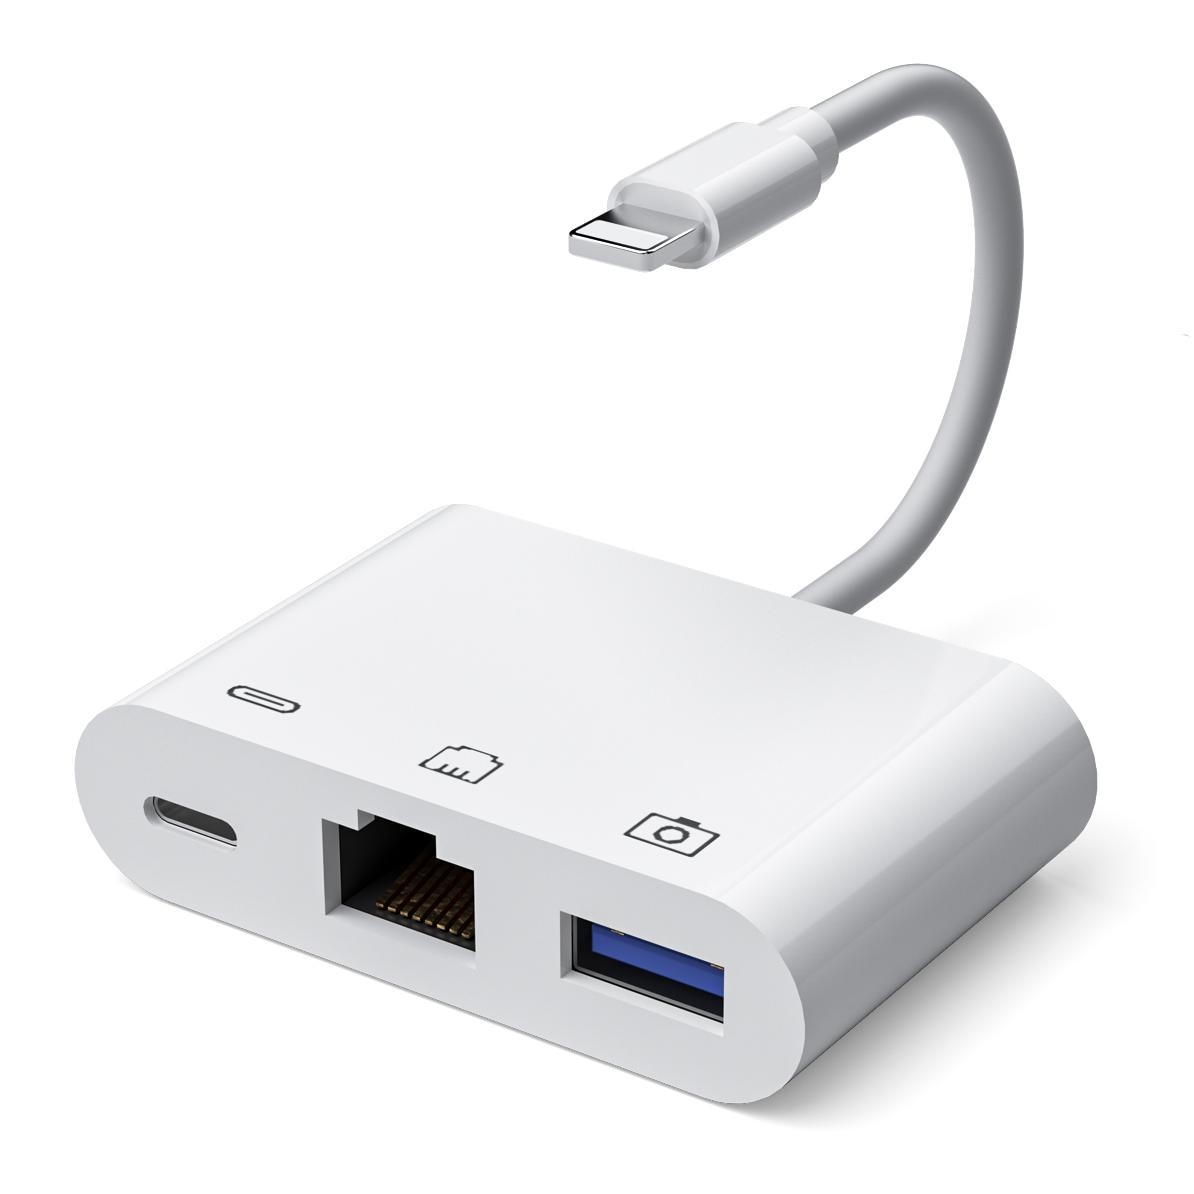 Lemorele Lightning to RJ45 Adapter Lightning USB OTG Converter Adapter for iPhone Mouse Keyboard Charging U Disk Camera CardRead